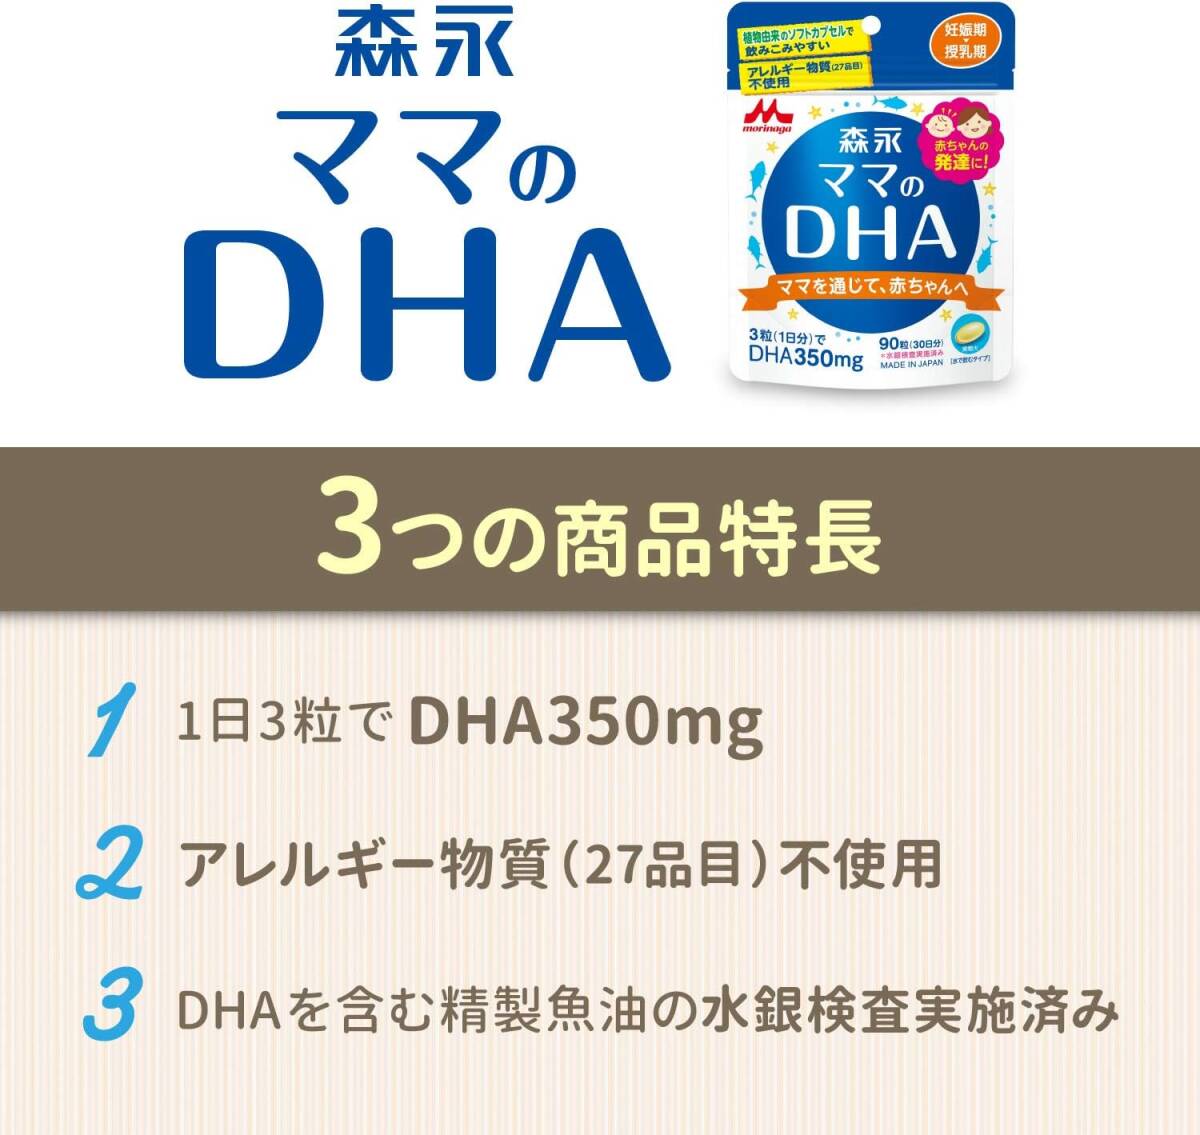  мама. DHA 90 шарик входить ( примерно 30 день минут ) беременность период ~ кормление период мама. DHA(ti- H e-) лес .90 шарик входить ( примерно 30 день минут ) беременность период ~.